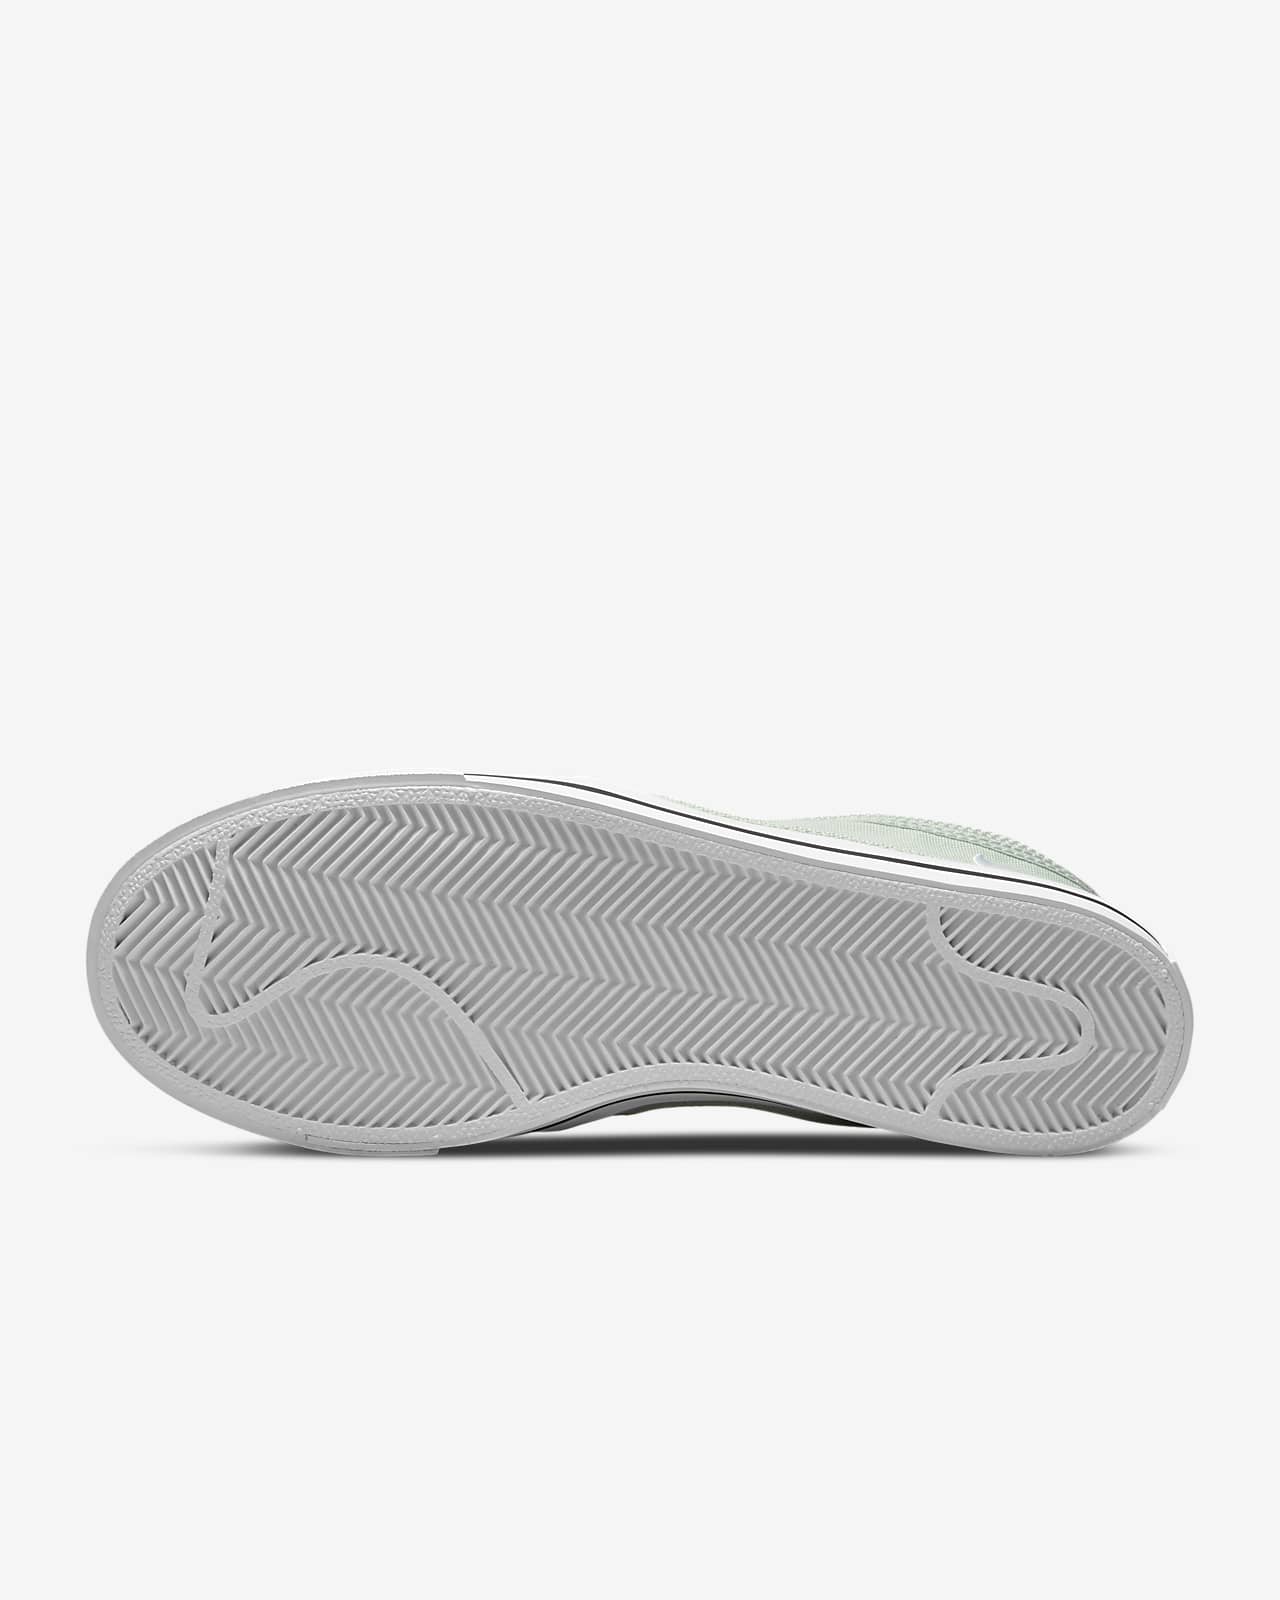 Sandalias PUMA de Tejido sintético de color Blanco para hombre Hombre Zapatos de Zapatos sin cordones de Zapatillas de casa 